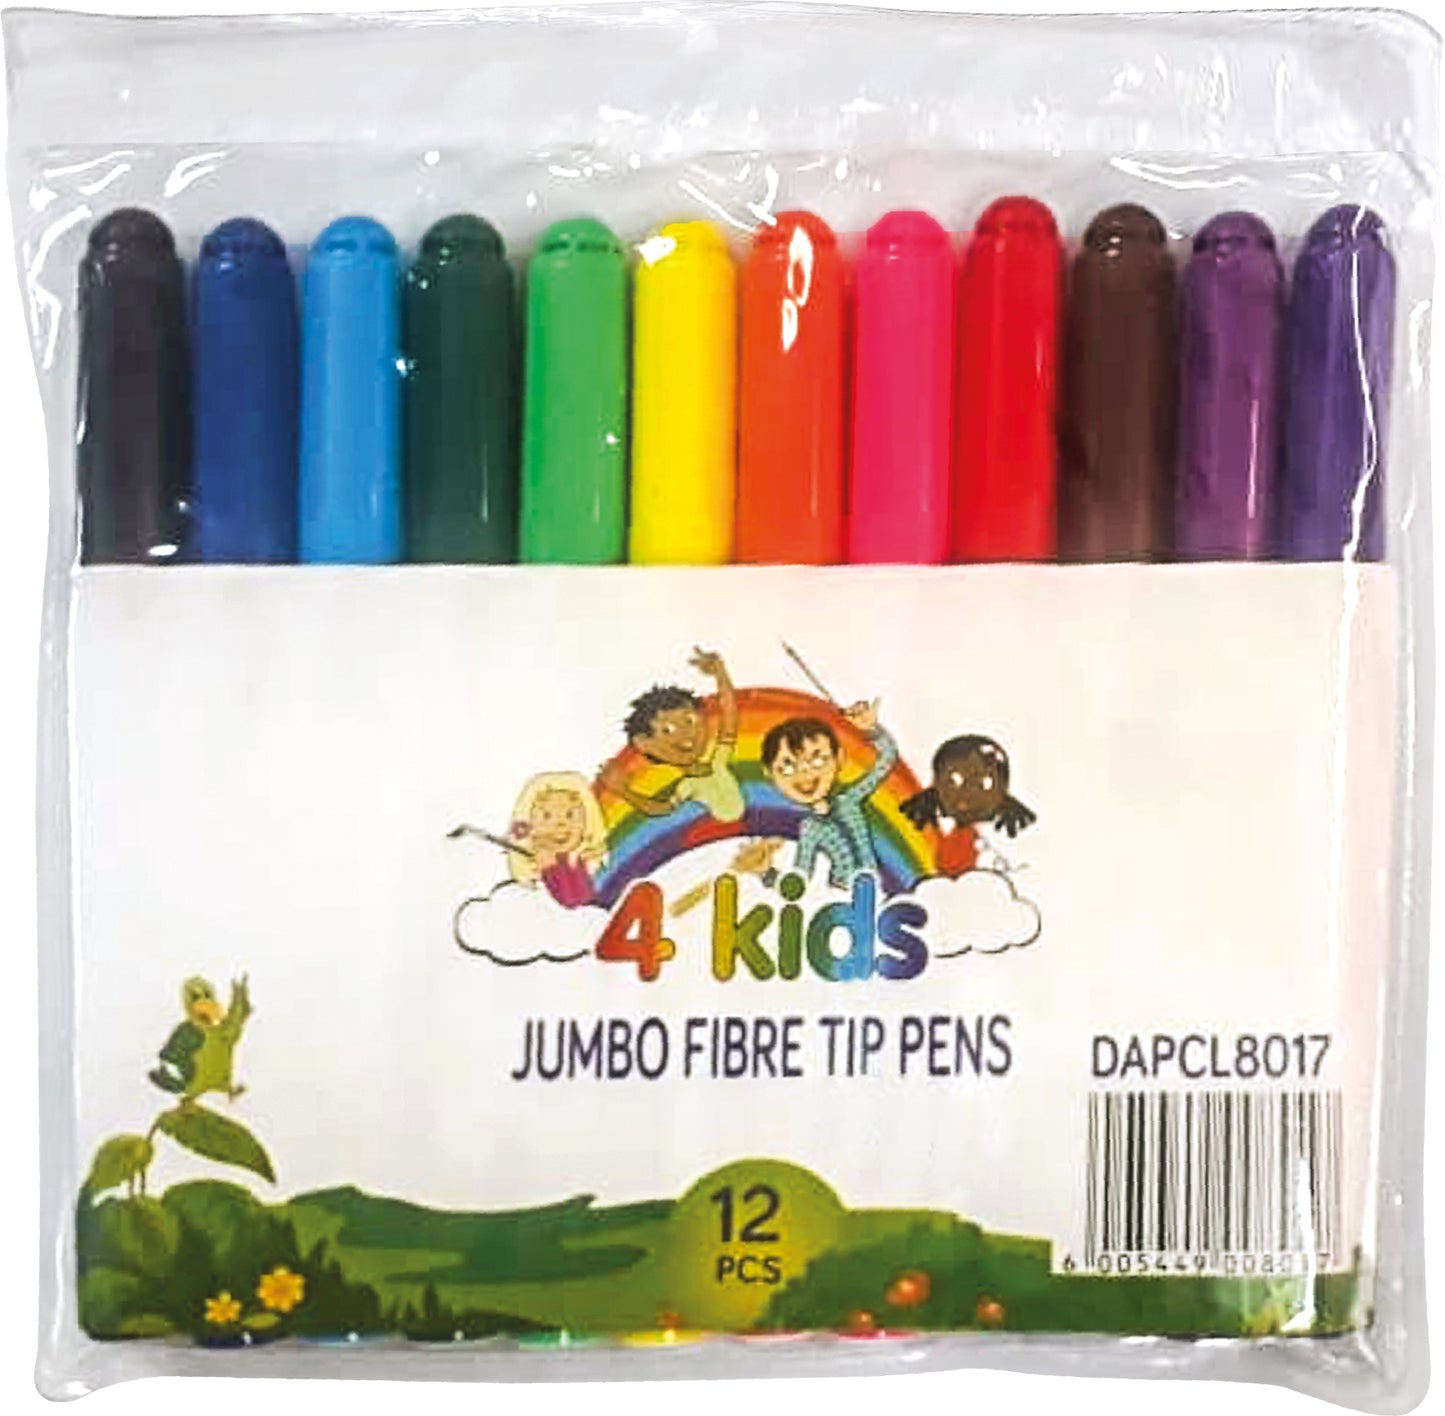 4Kids Jumbo Fibre Tip Pens